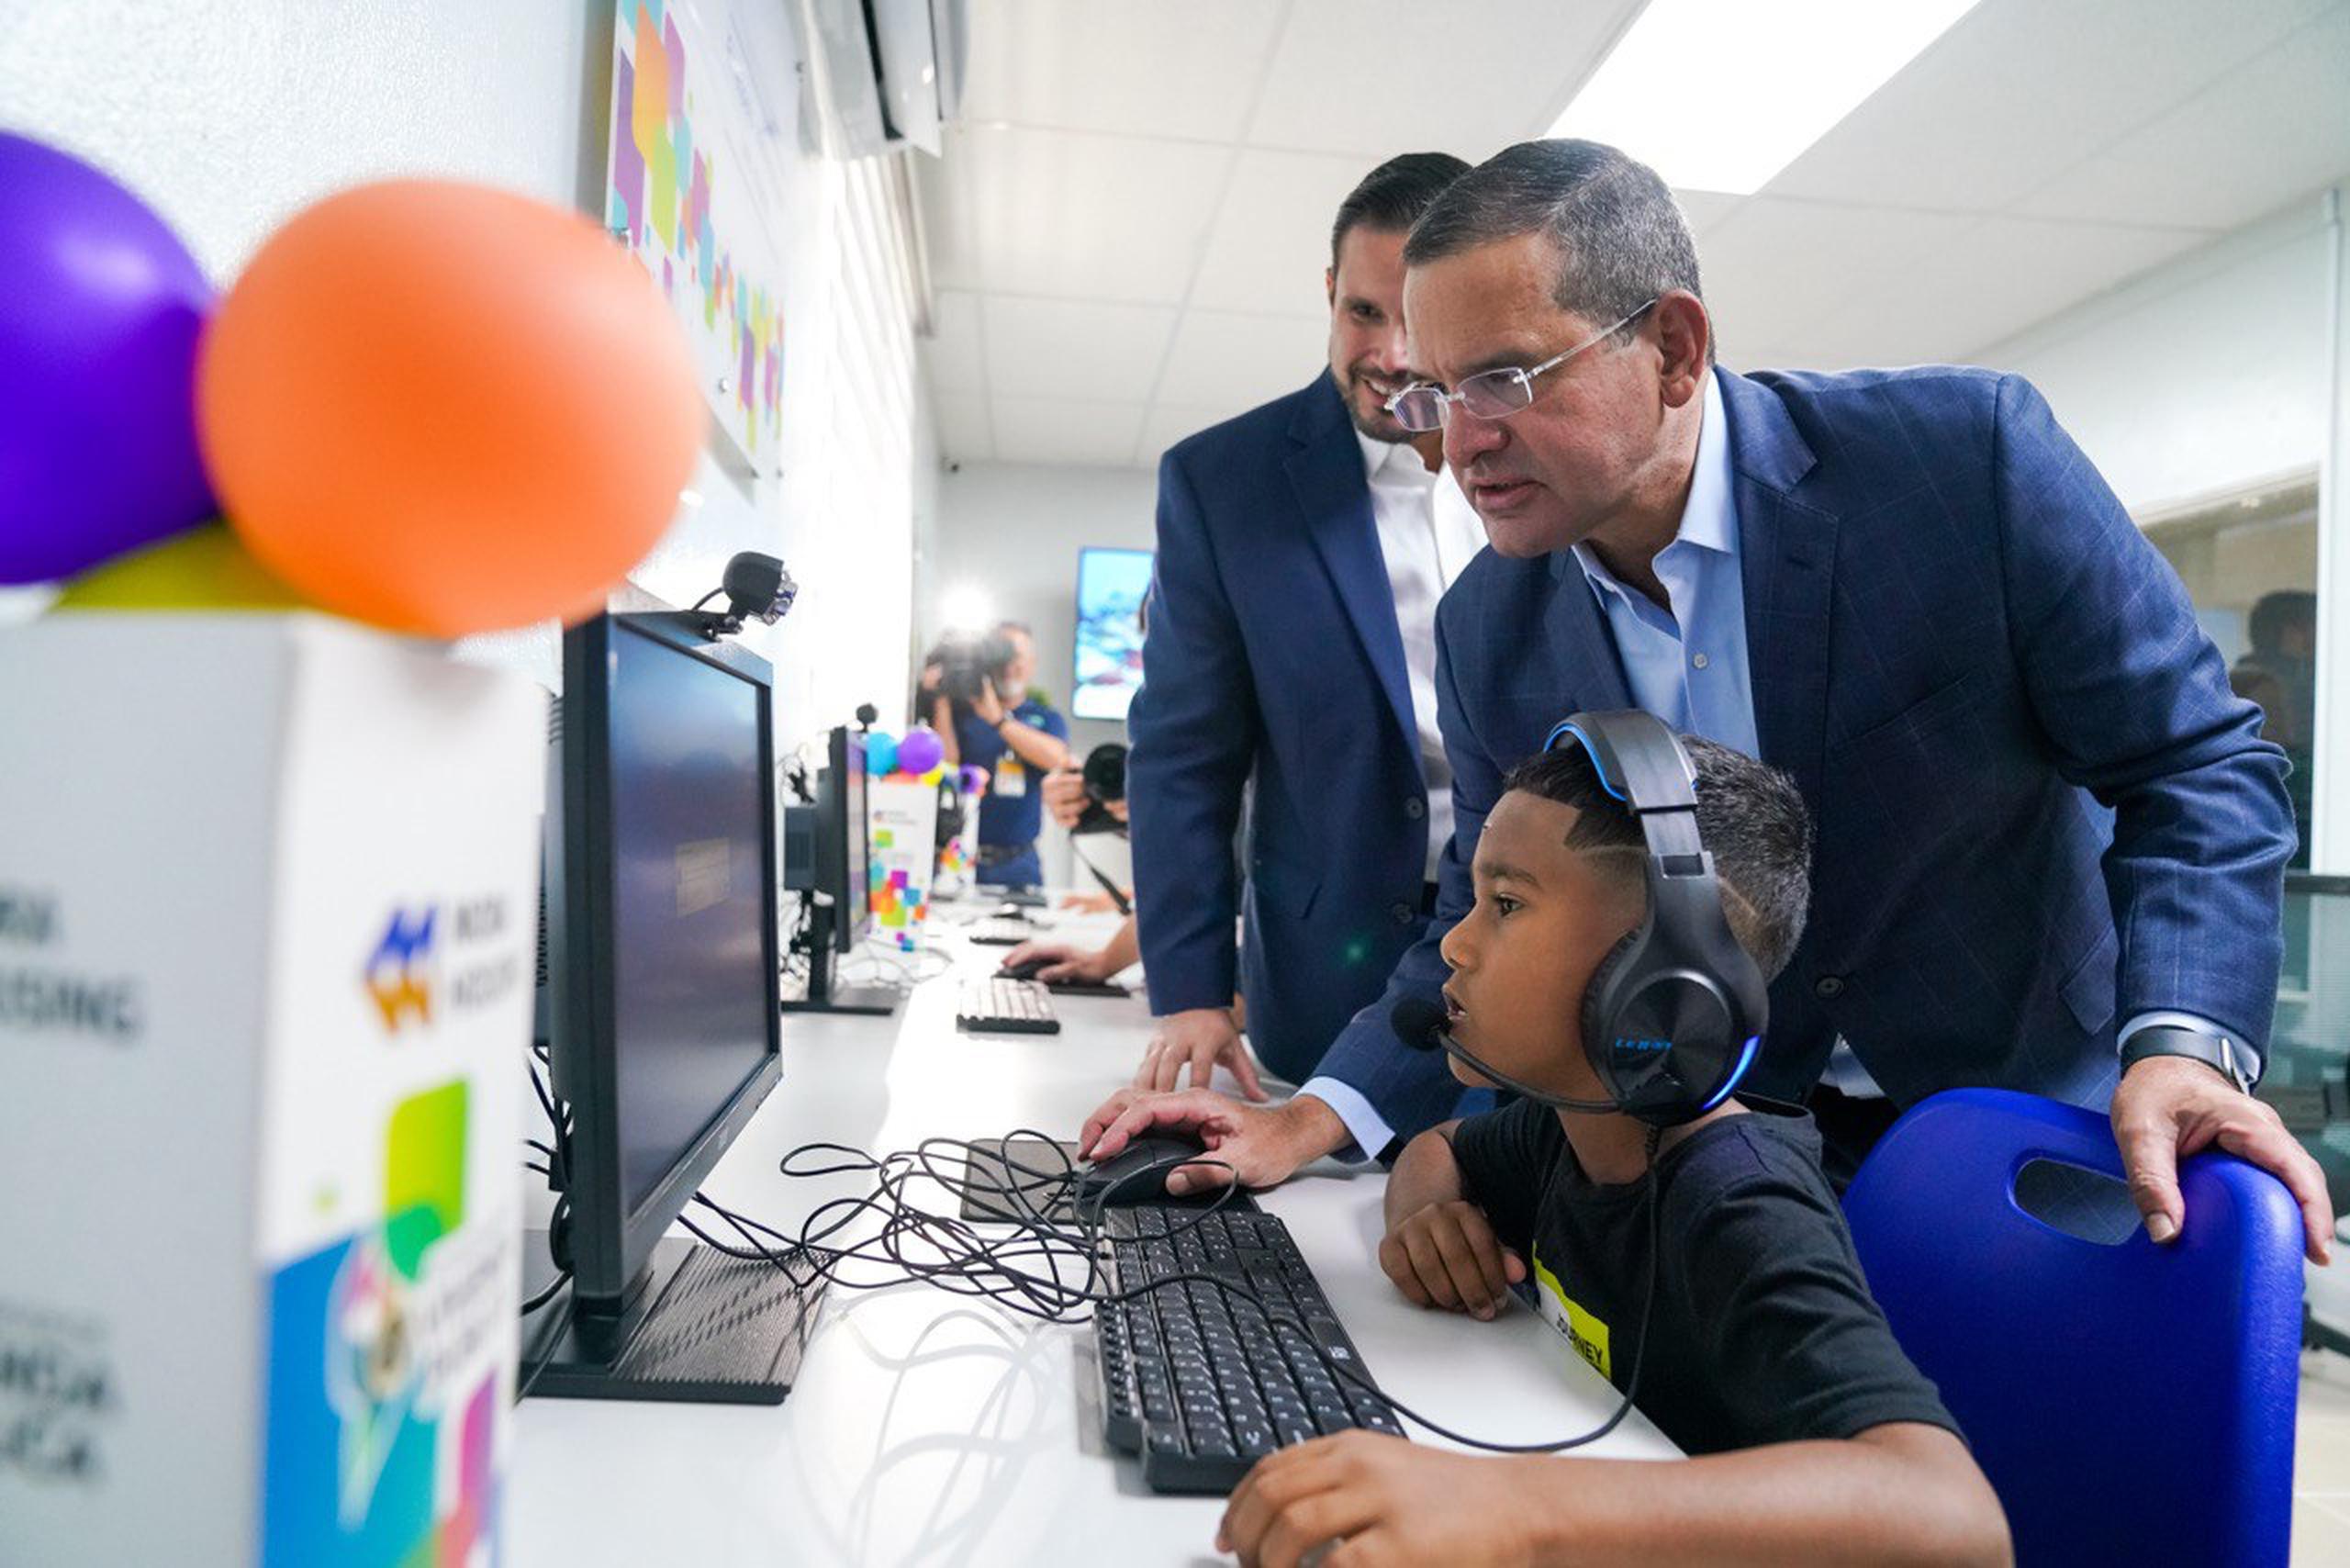 “Como gobernador tengo un compromiso muy grande con nuestras comunidades en busca de que cuenten con las mejores herramientas y servicios de tecnología educativa”, dijo el gobernador Pedro Pierluisi.